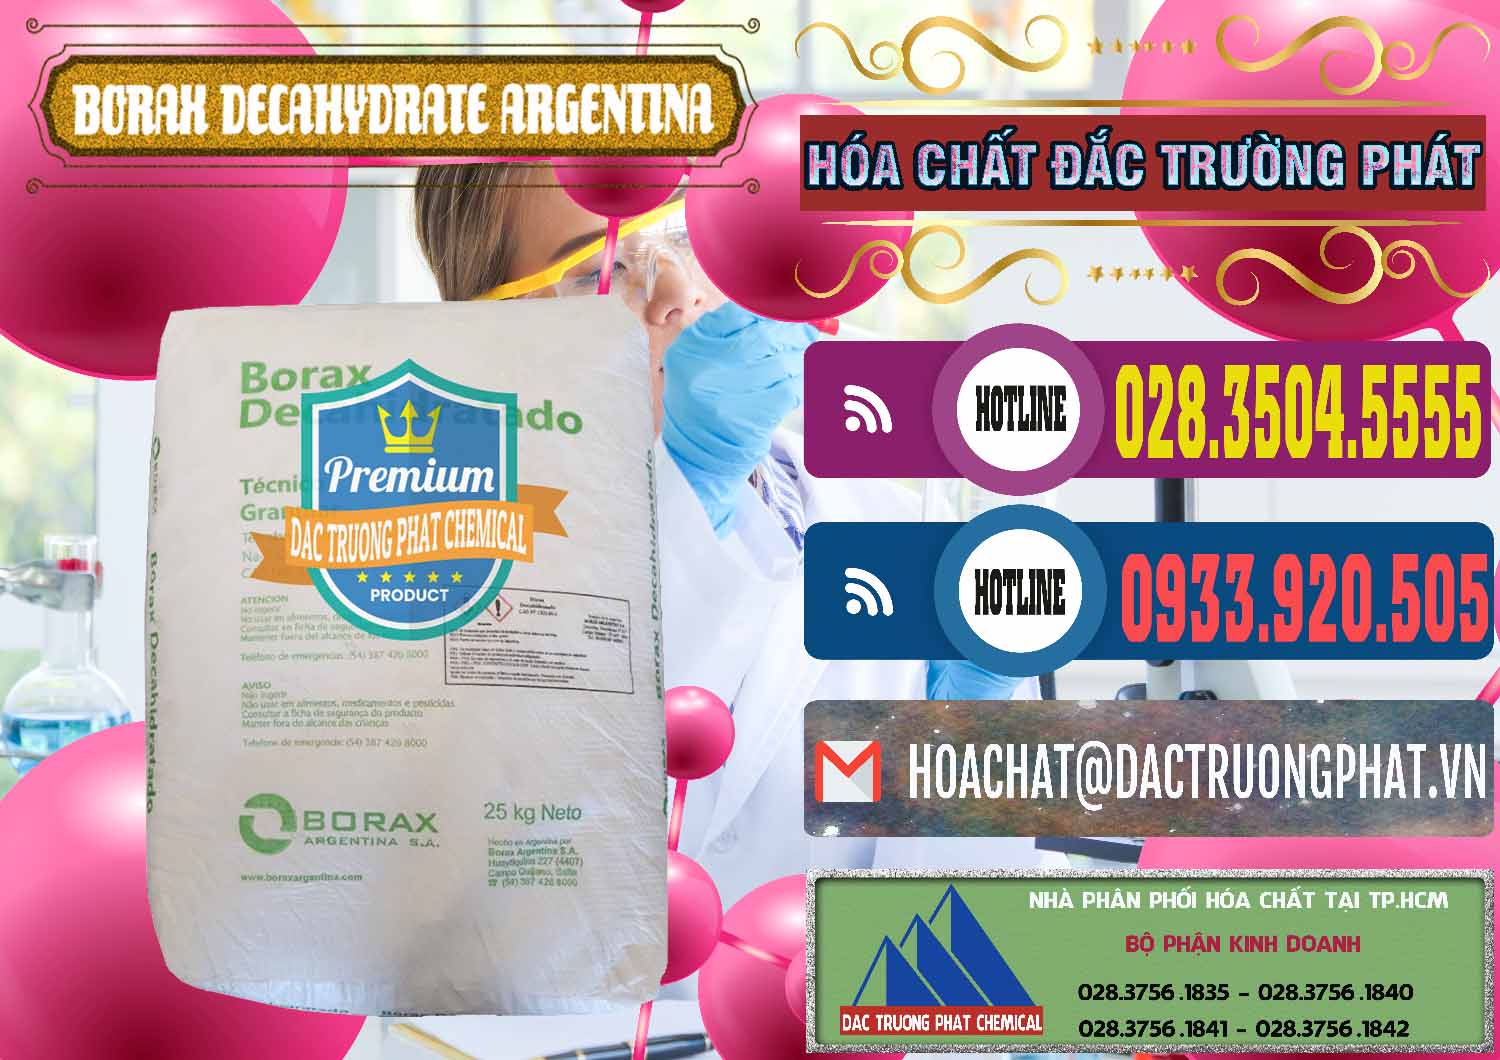 Cty chuyên bán và phân phối Borax Decahydrate Argentina - 0446 - Nhà phân phối _ nhập khẩu hóa chất tại TP.HCM - muabanhoachat.com.vn